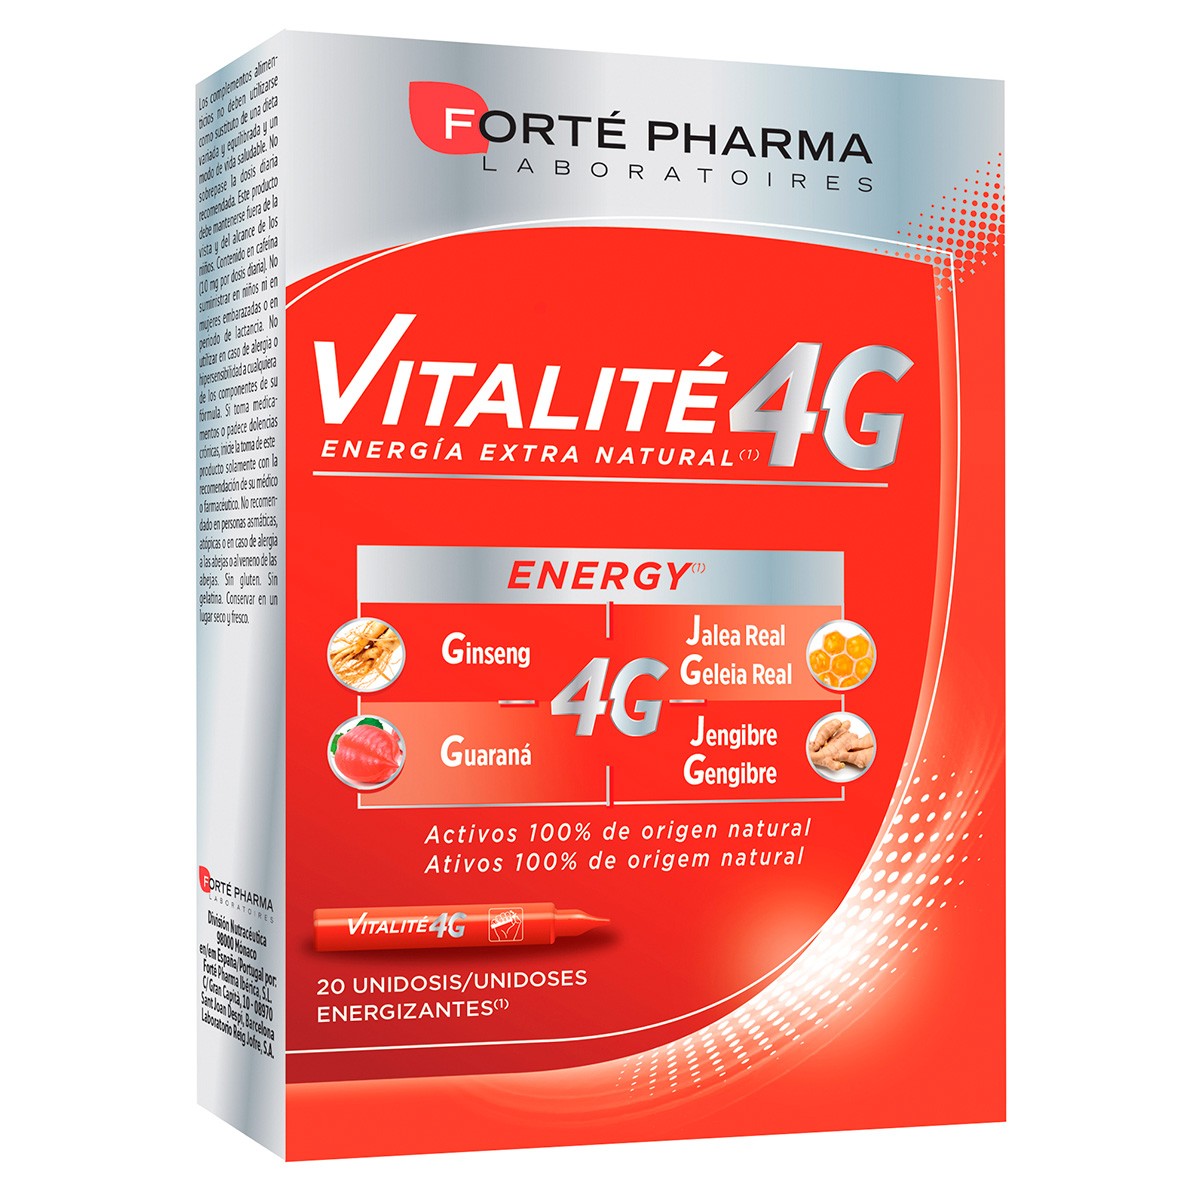 Imagen de Forte Pharma Energy vitalite 4 20 viales